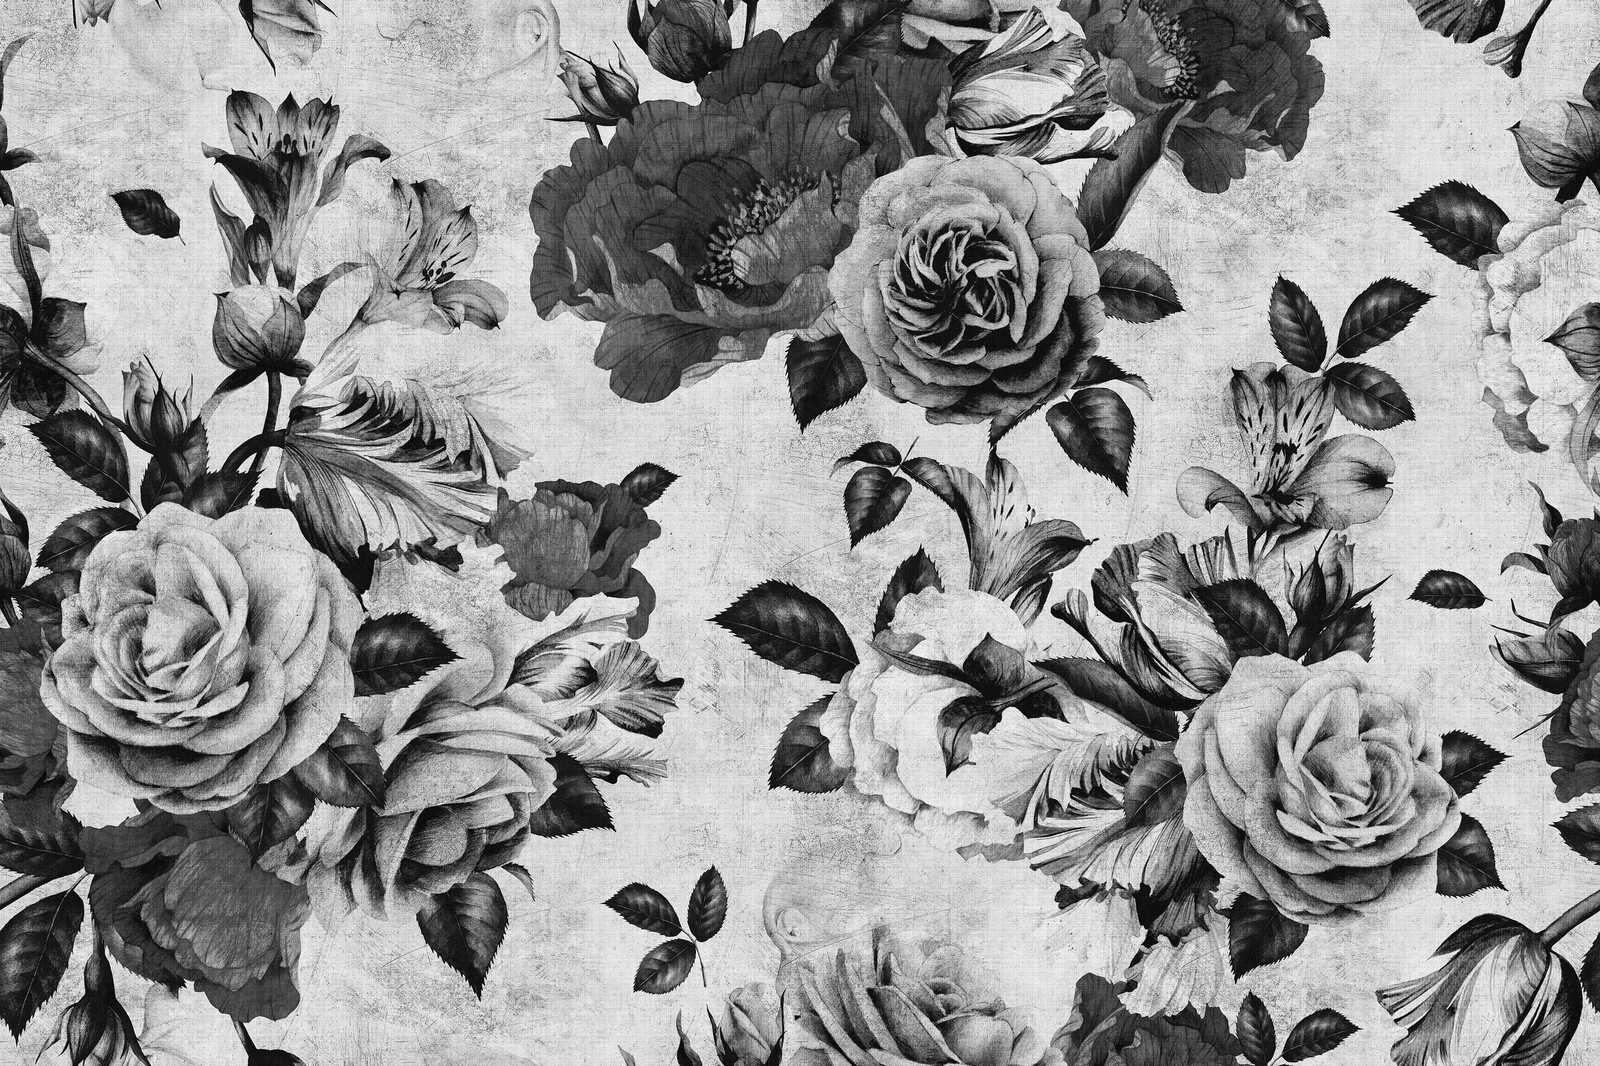             Spanish rose 1 - Toile de roses avec fleurs en noir et blanc - 0,90 m x 0,60 m
        